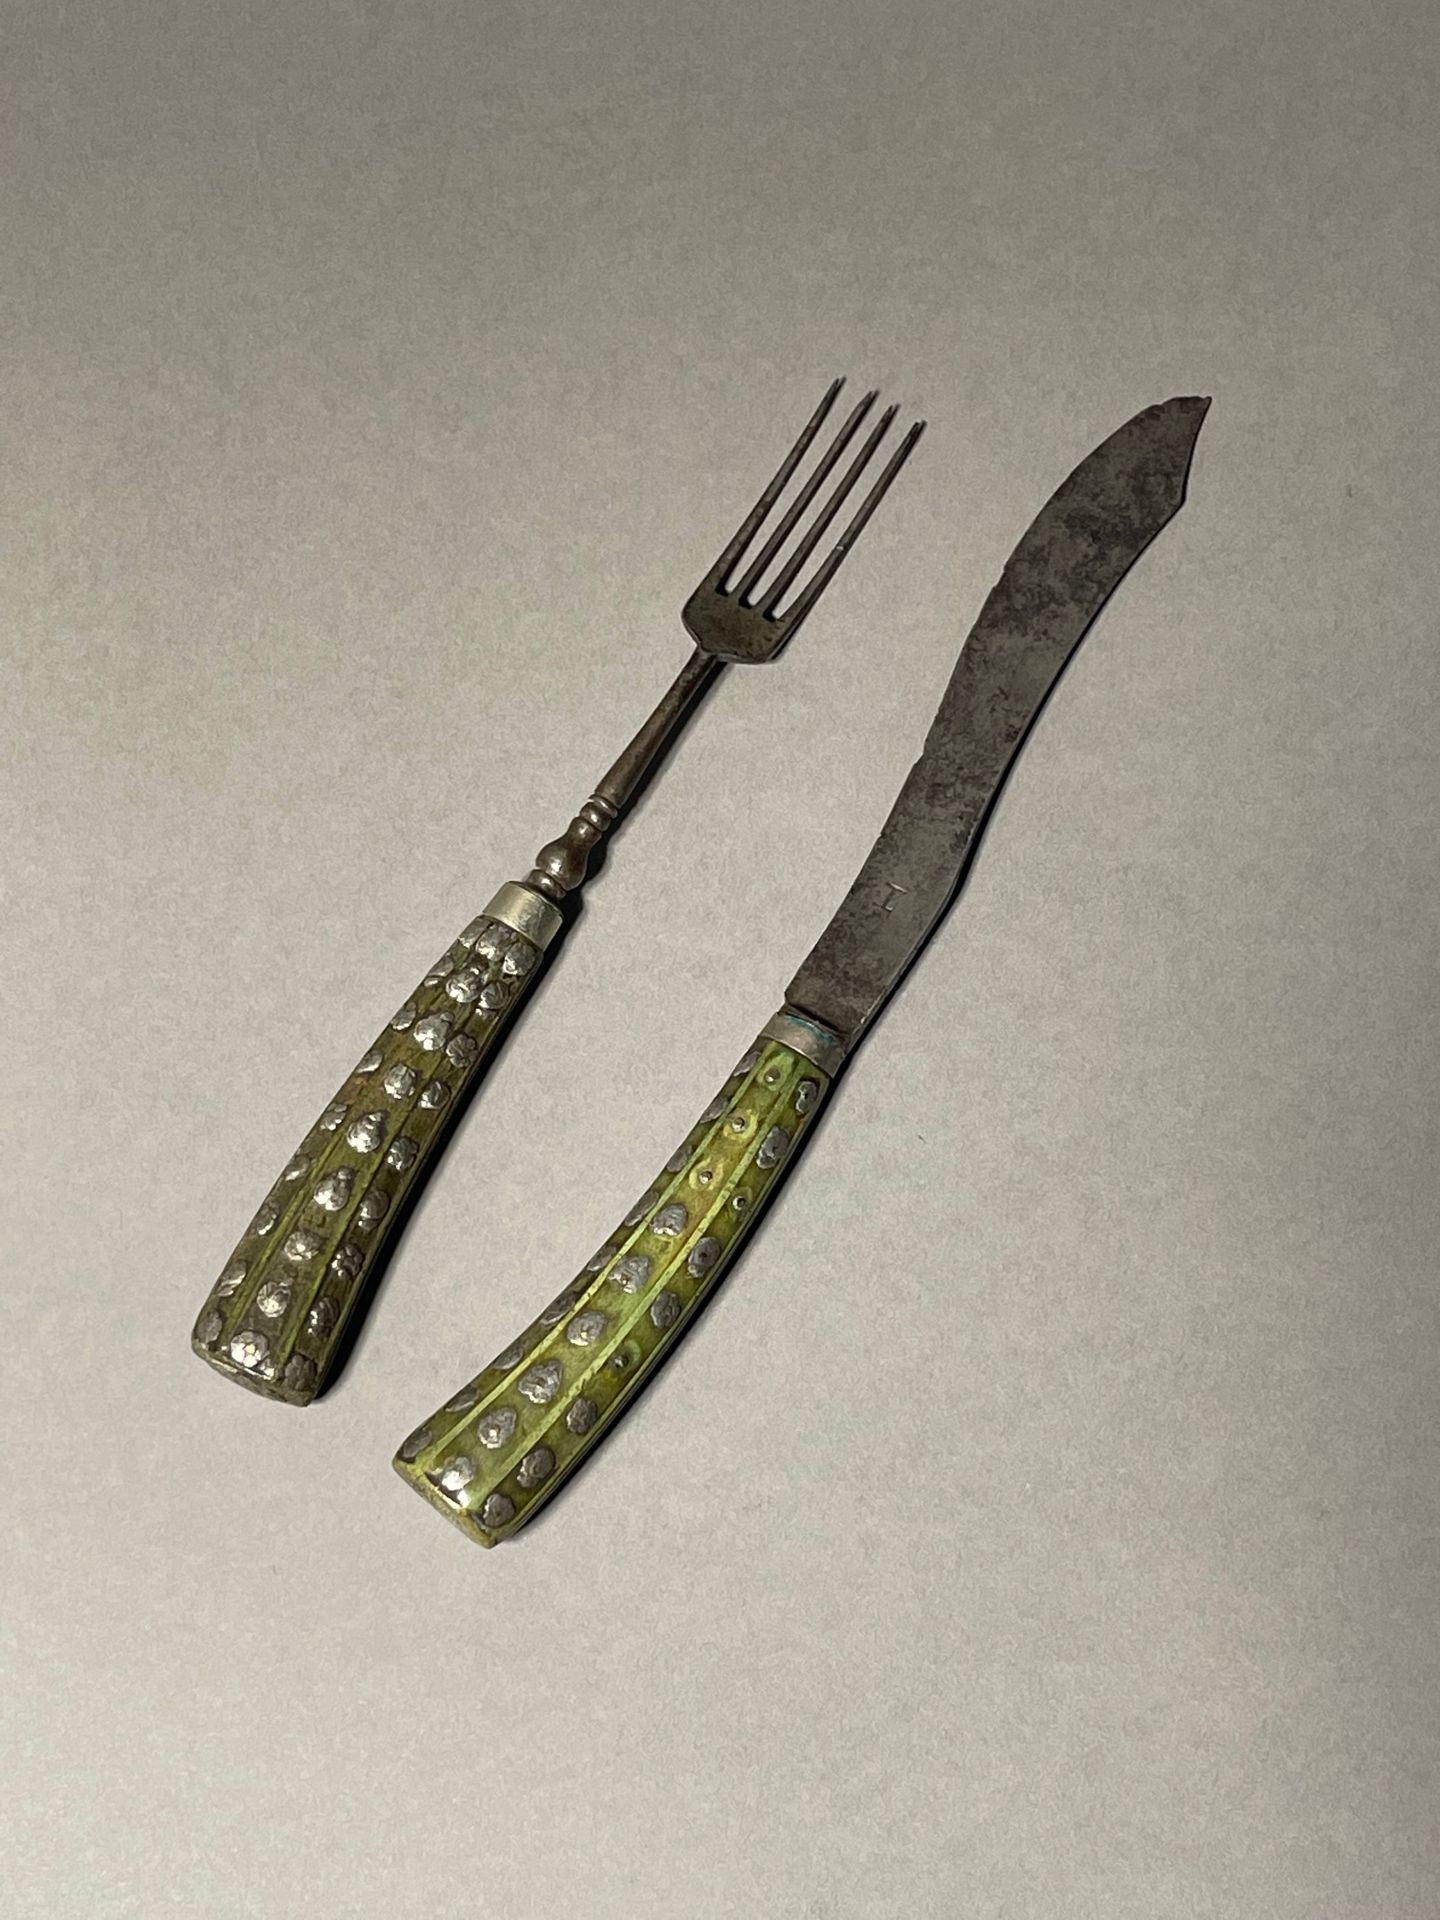 Null 狩猎用餐具
绿色染色骨柄，银质镶嵌的人物和叶子装饰
刀片上有L（Langre）的签名
17世纪末